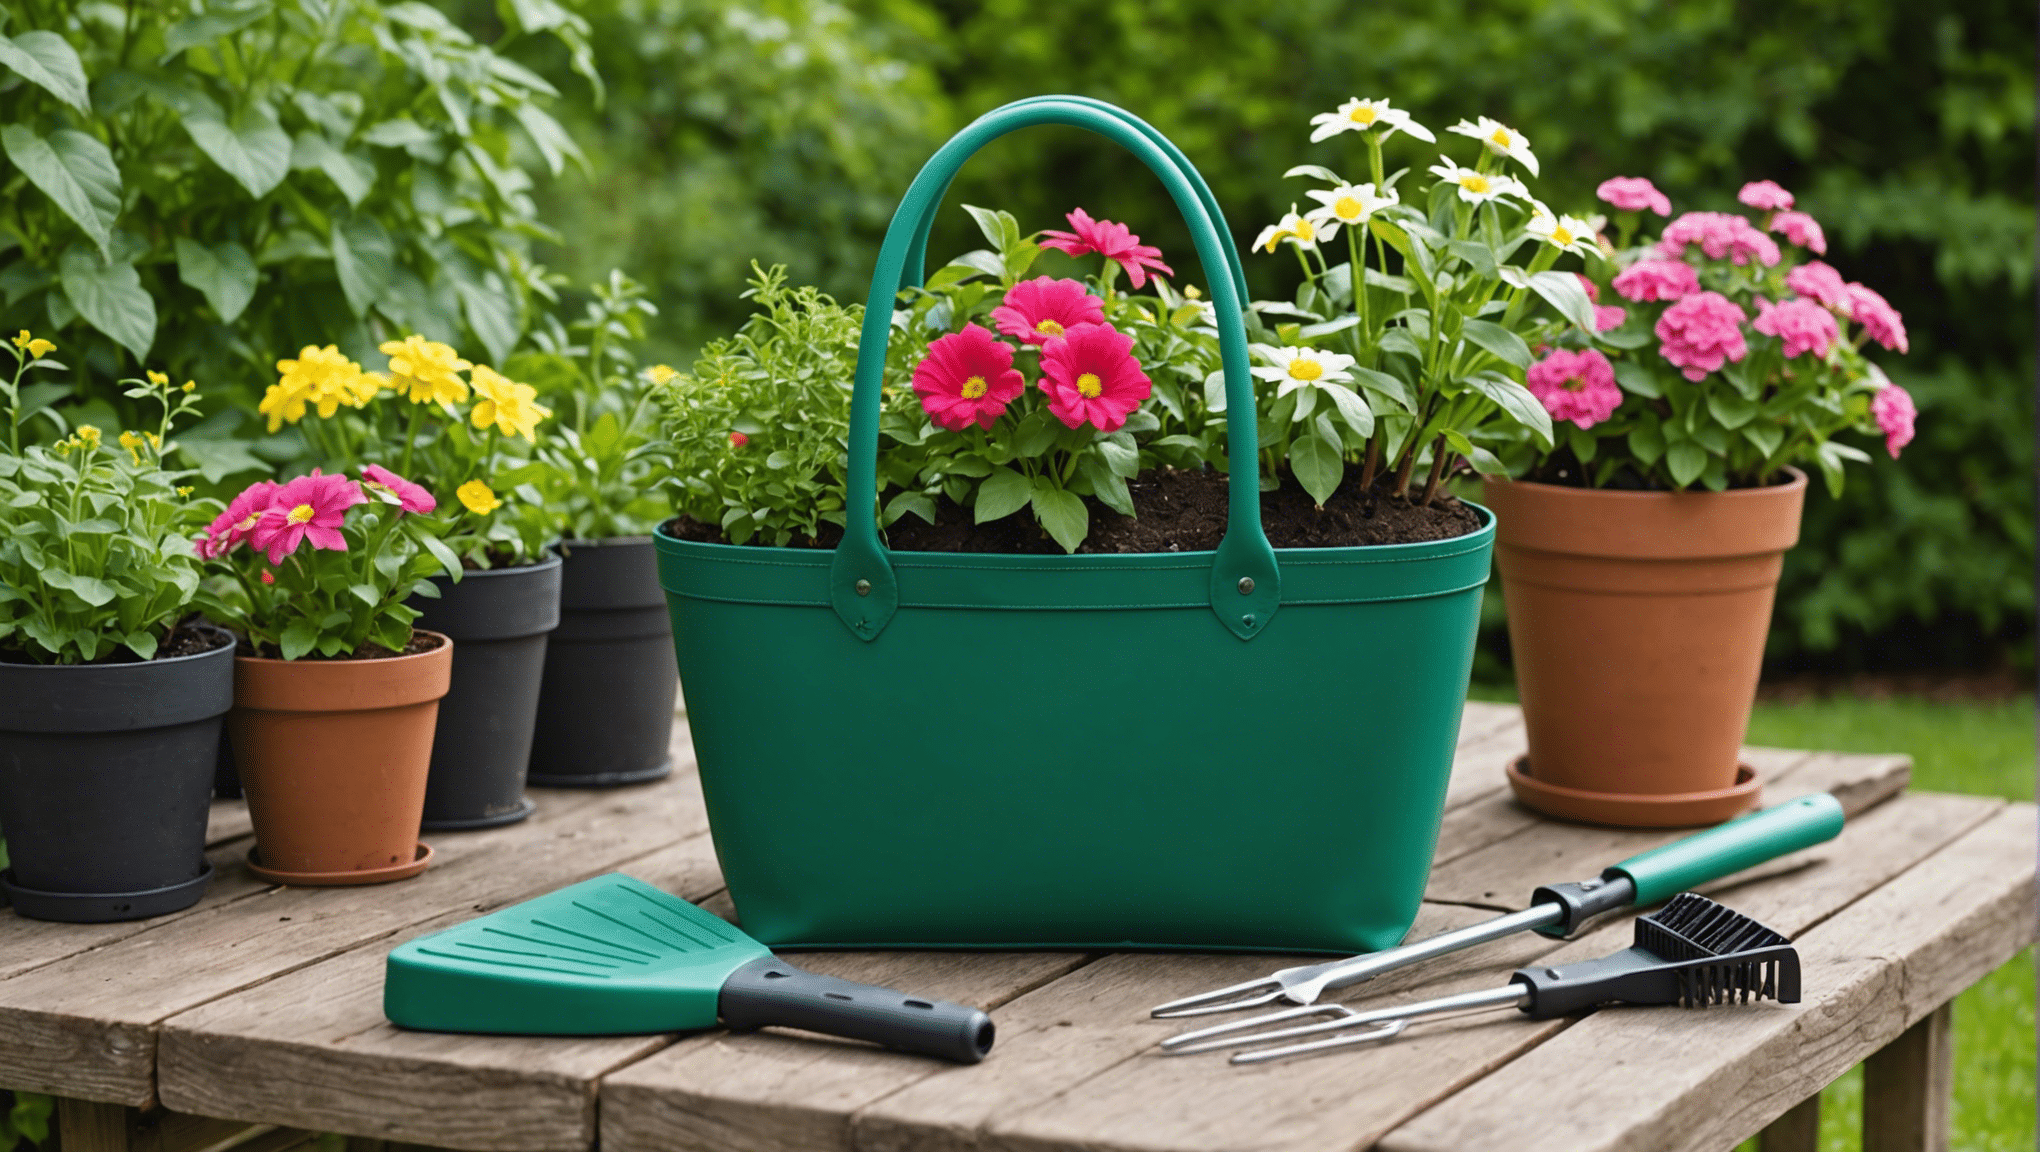 Bir bahçe çantasının olmazsa olmaz özelliklerini öğrenin ve bahçe ihtiyaçlarınız için mükemmel olanı bulun. Keyifli bir bahçe deneyimi için dayanıklı malzemeleri, geniş saklama alanını ve kullanışlı tasarımı keşfedin.